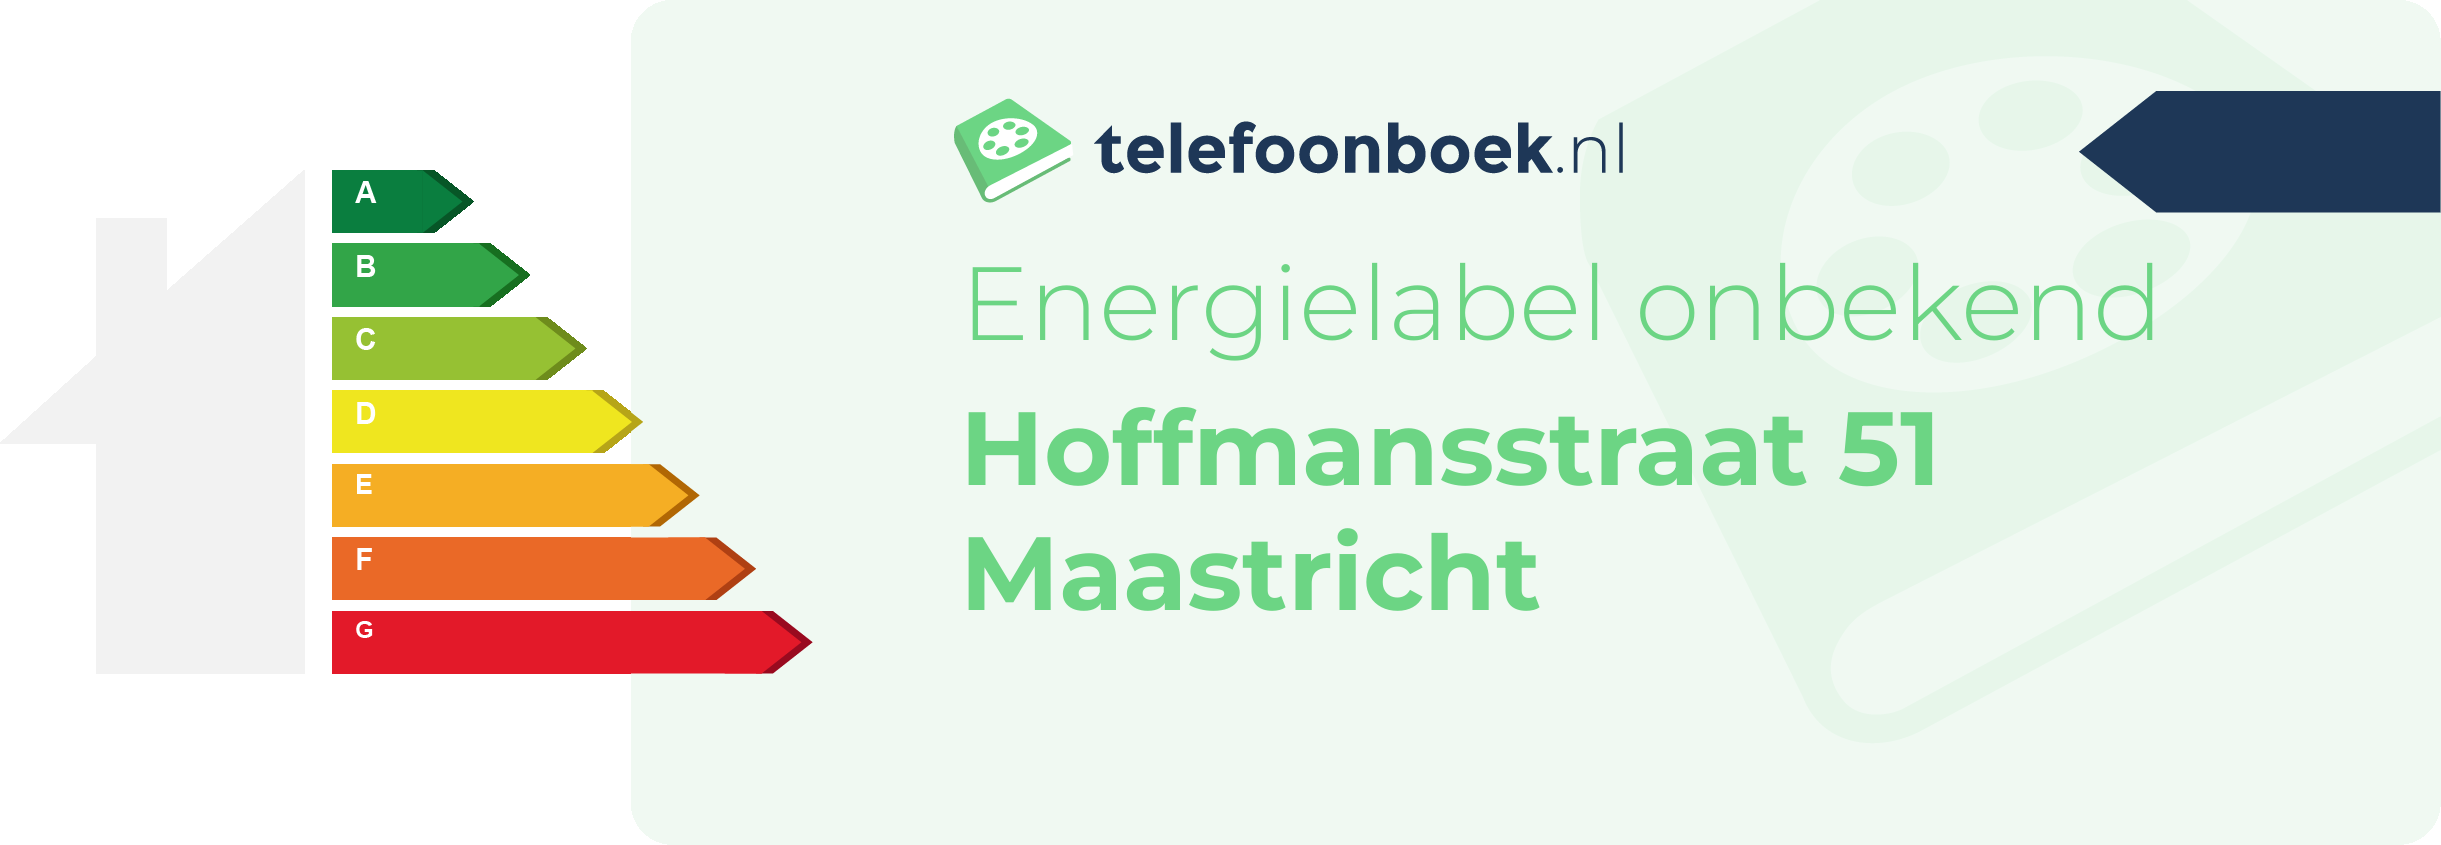 Energielabel Hoffmansstraat 51 Maastricht